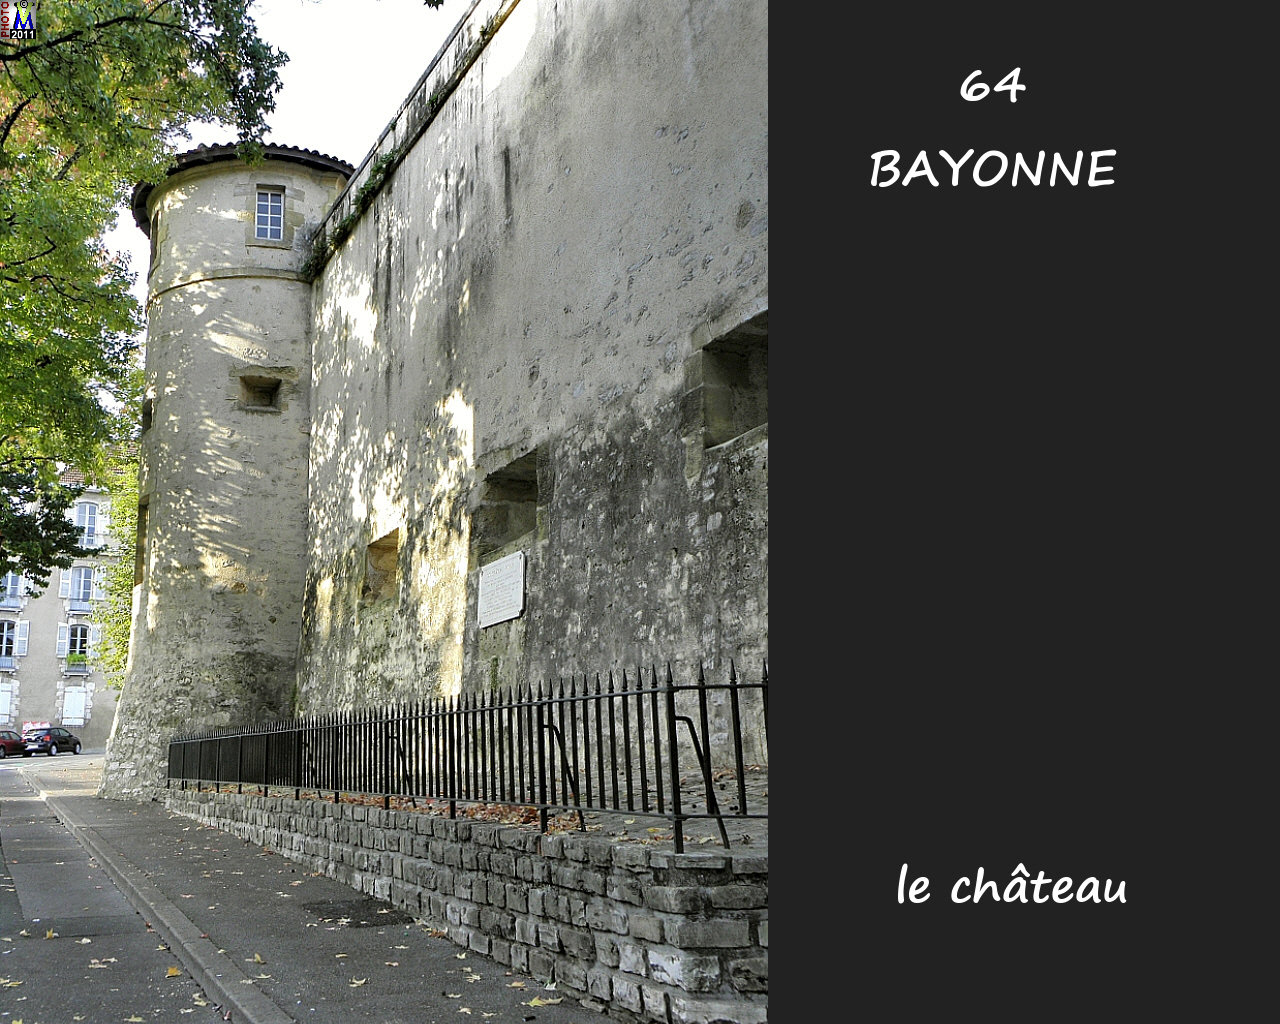 64BAYONNE_chateau_114.jpg